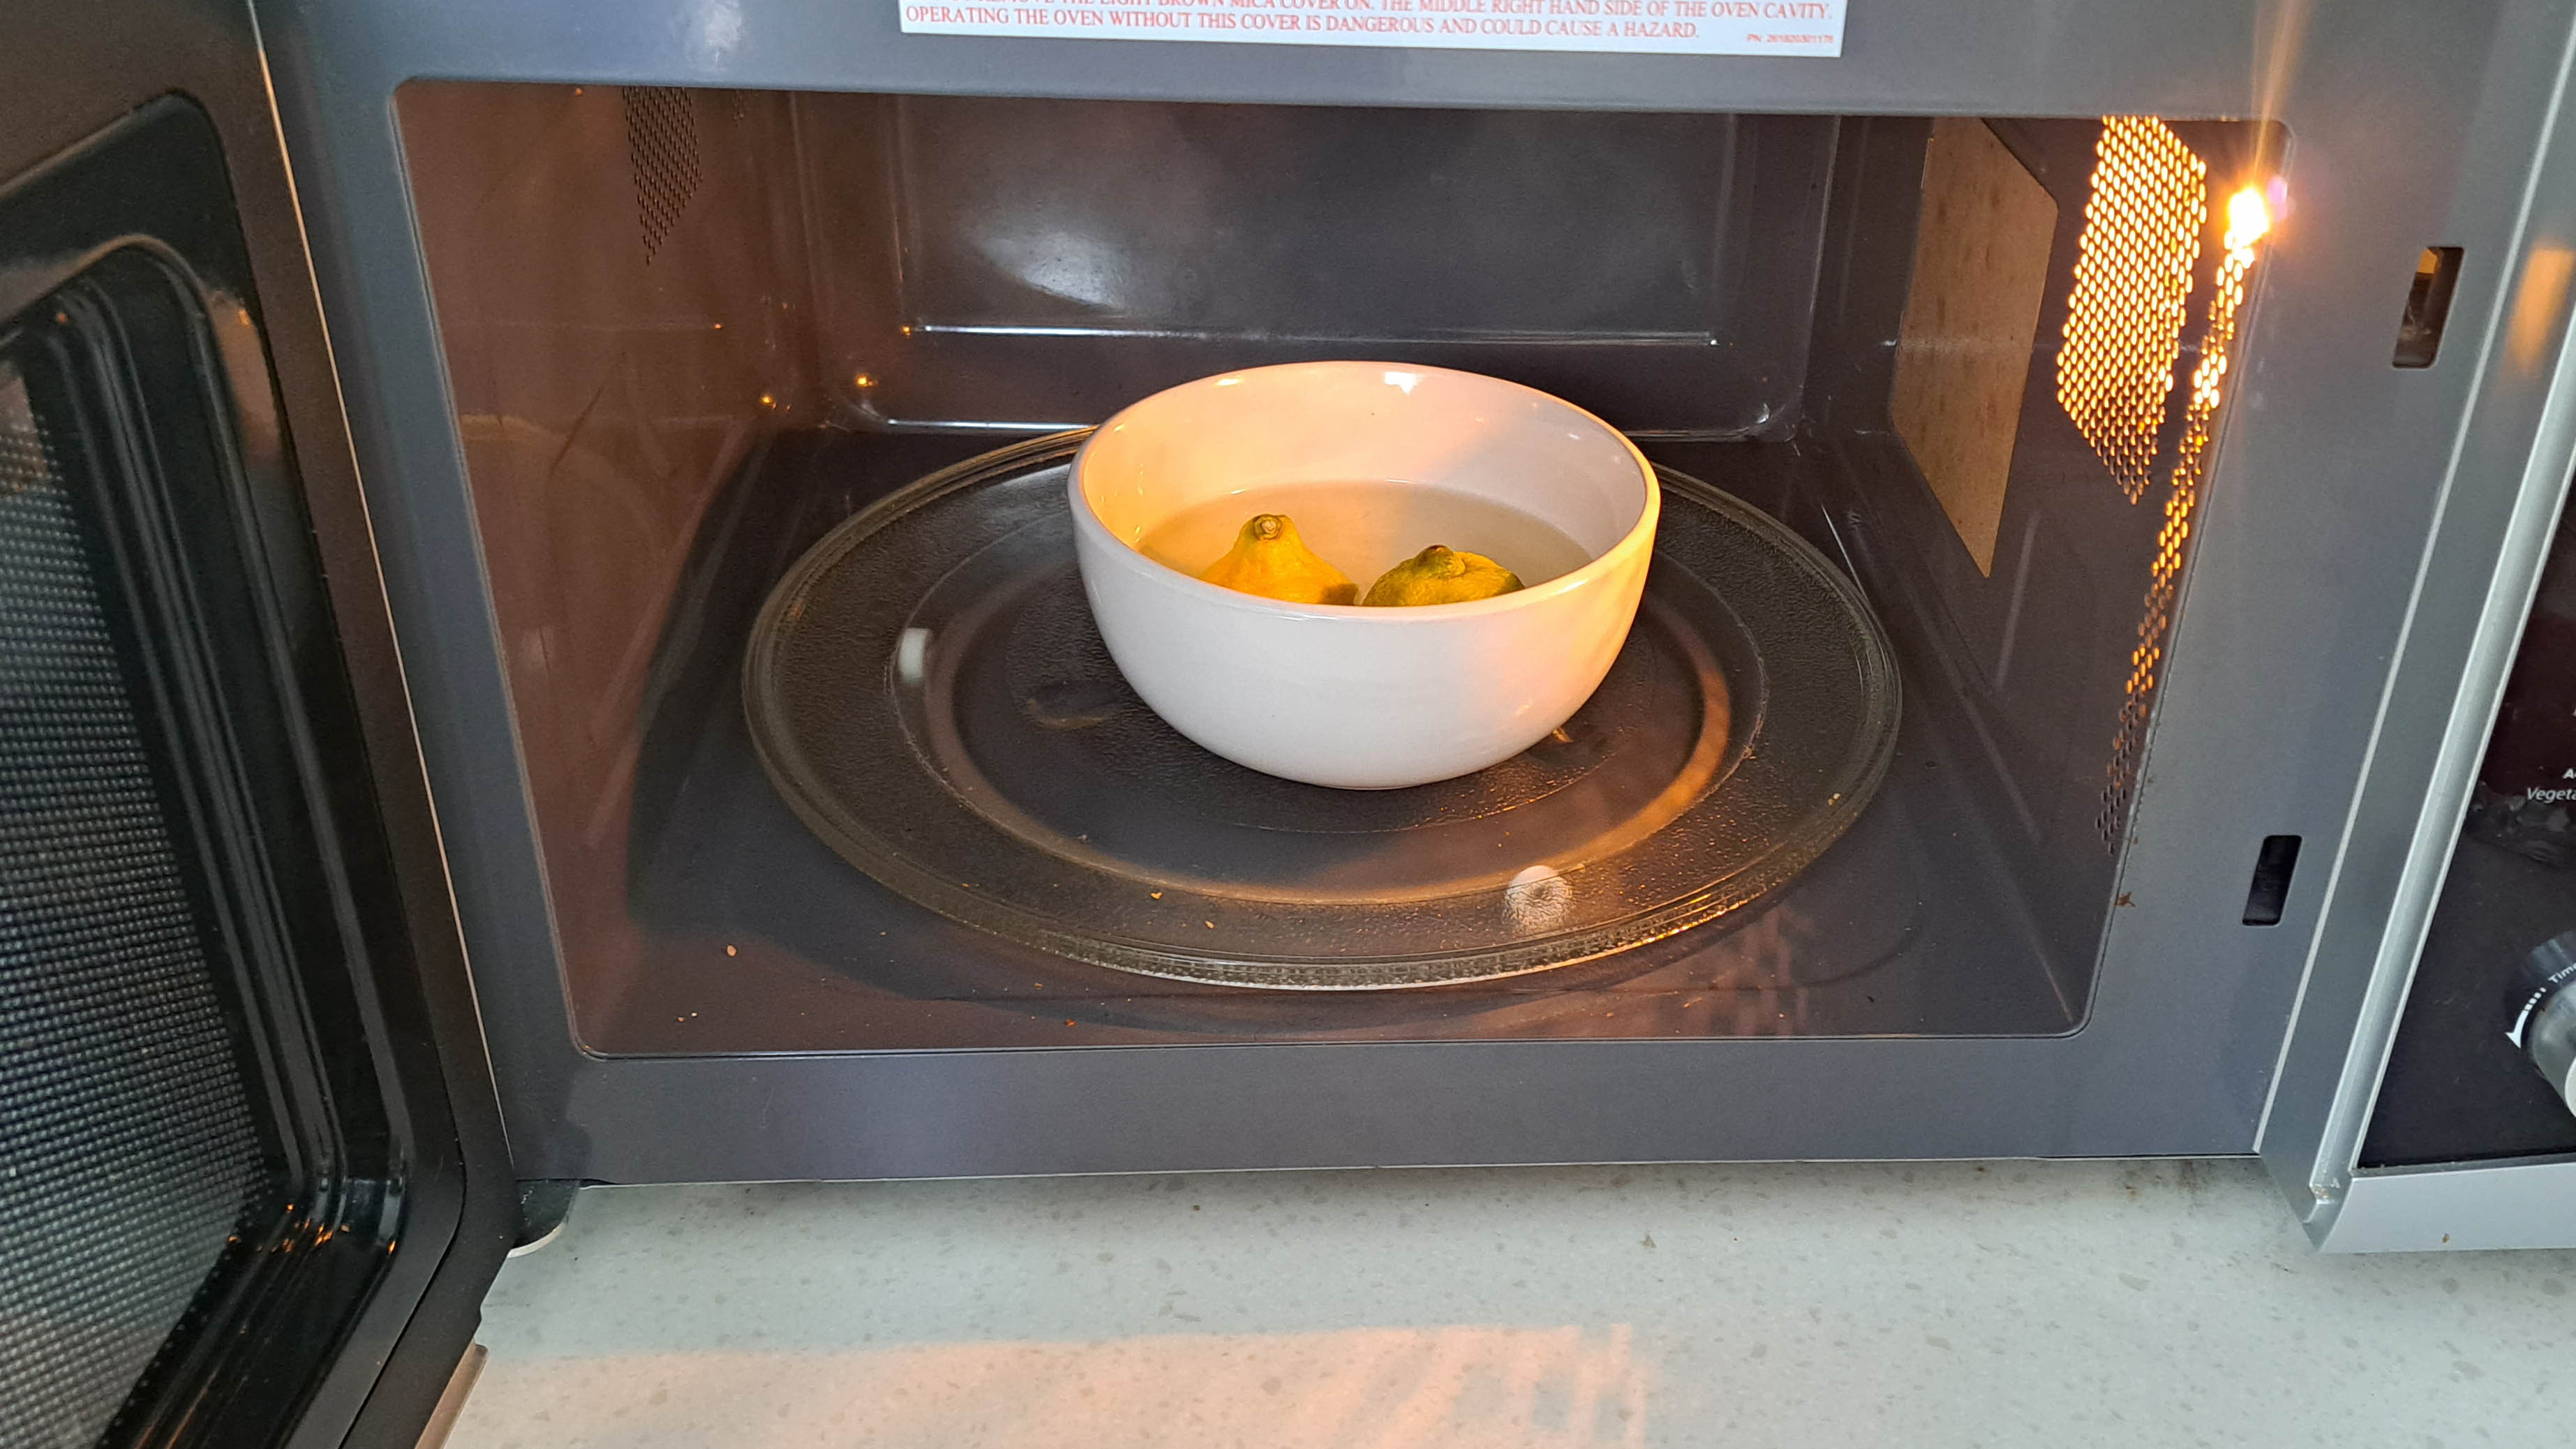 Bowl of lemons in microwave